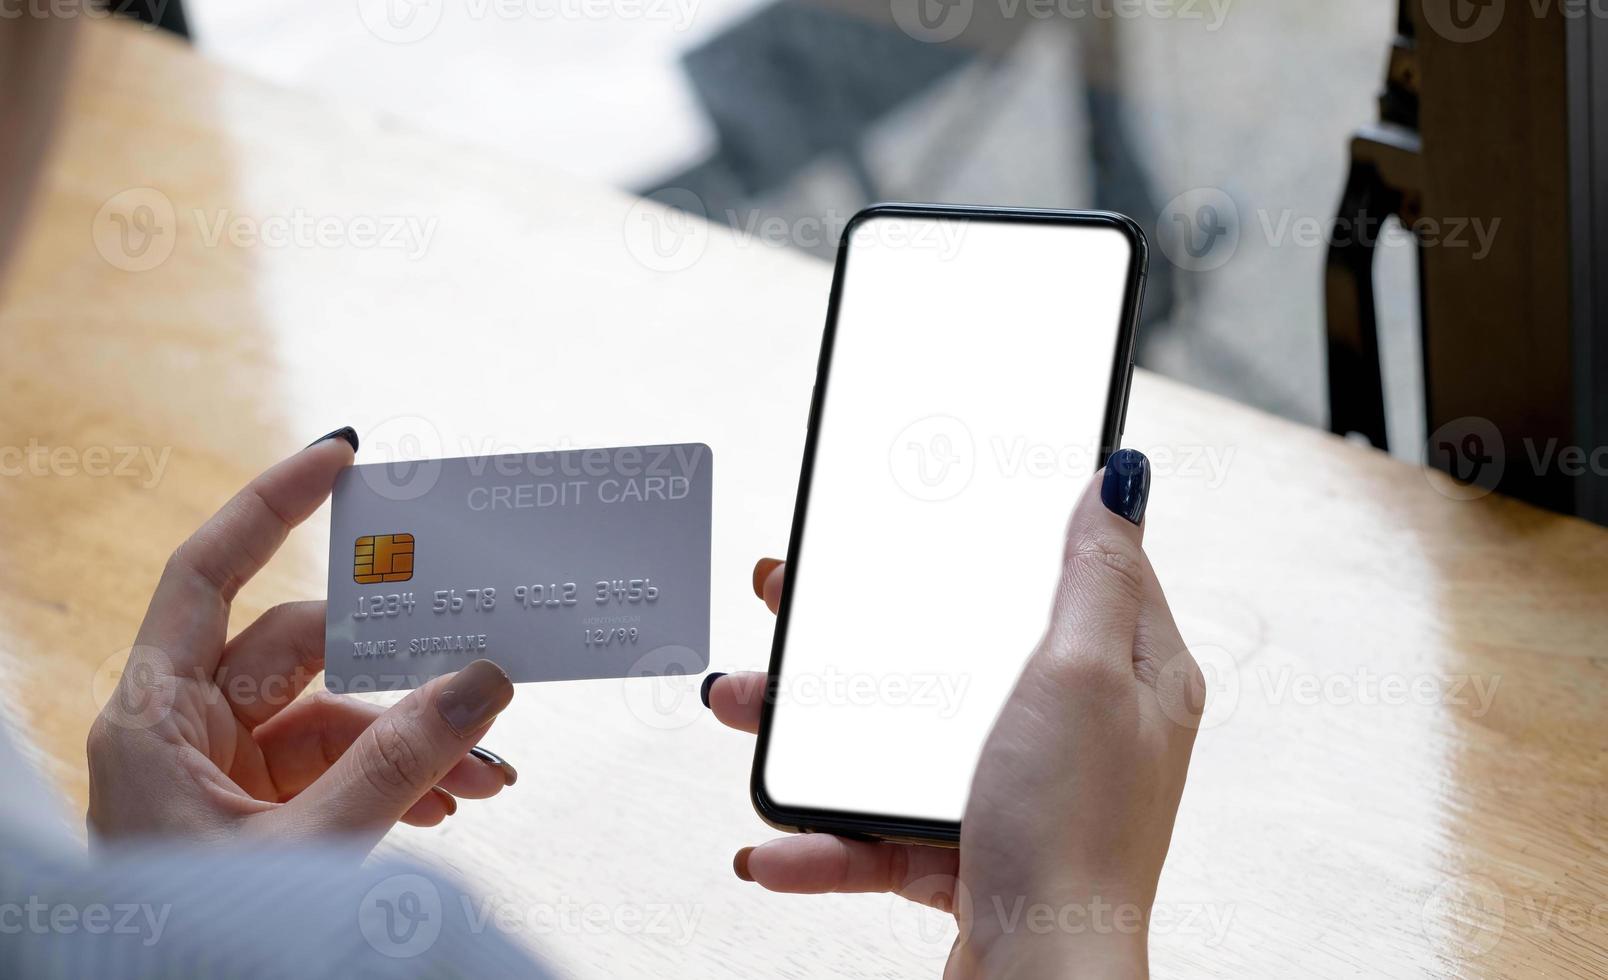 Onlinebezahlung. frau, die smartphone mit leerem bildschirm und kreditkarte hält und finanztransaktionen durchführt foto